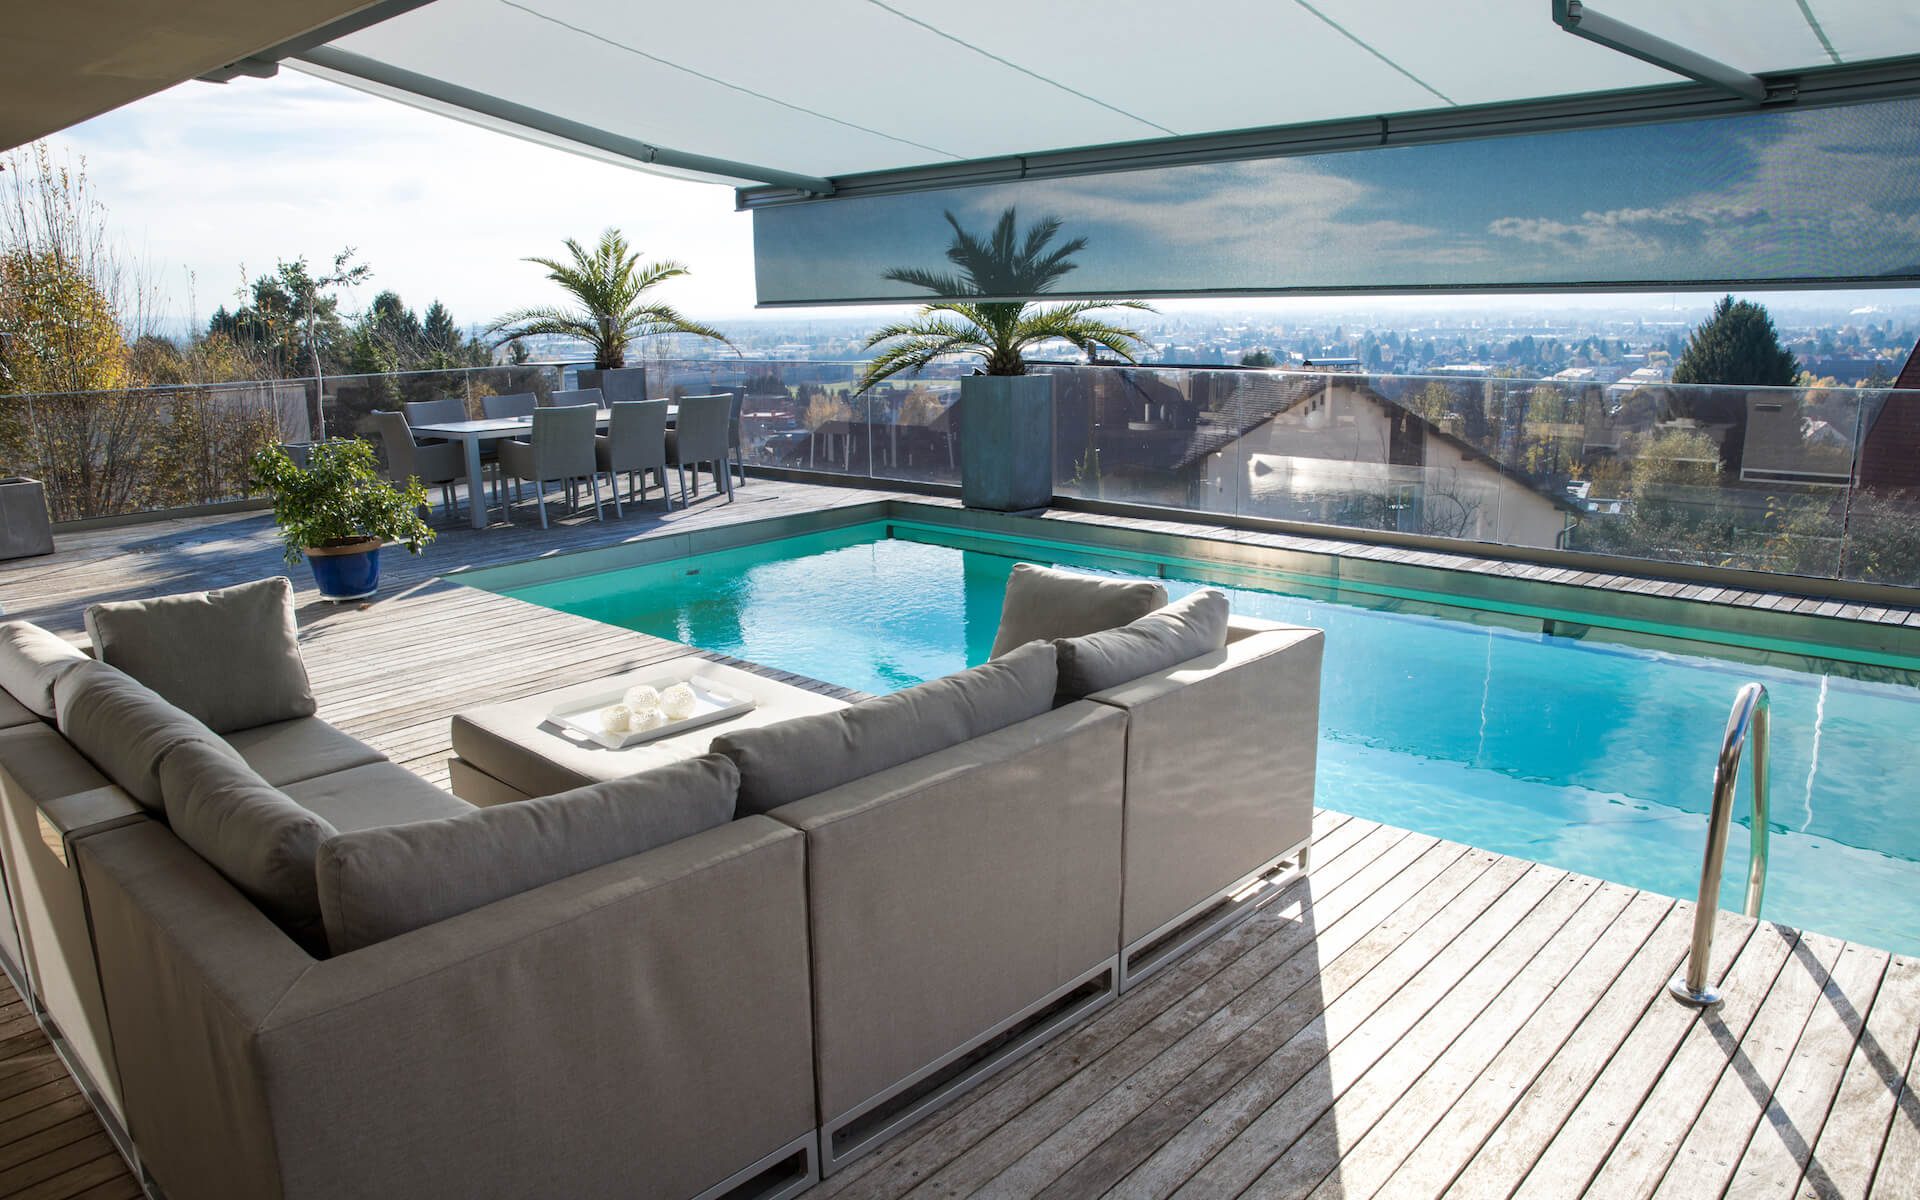 Terrasse mit Pool und Markise